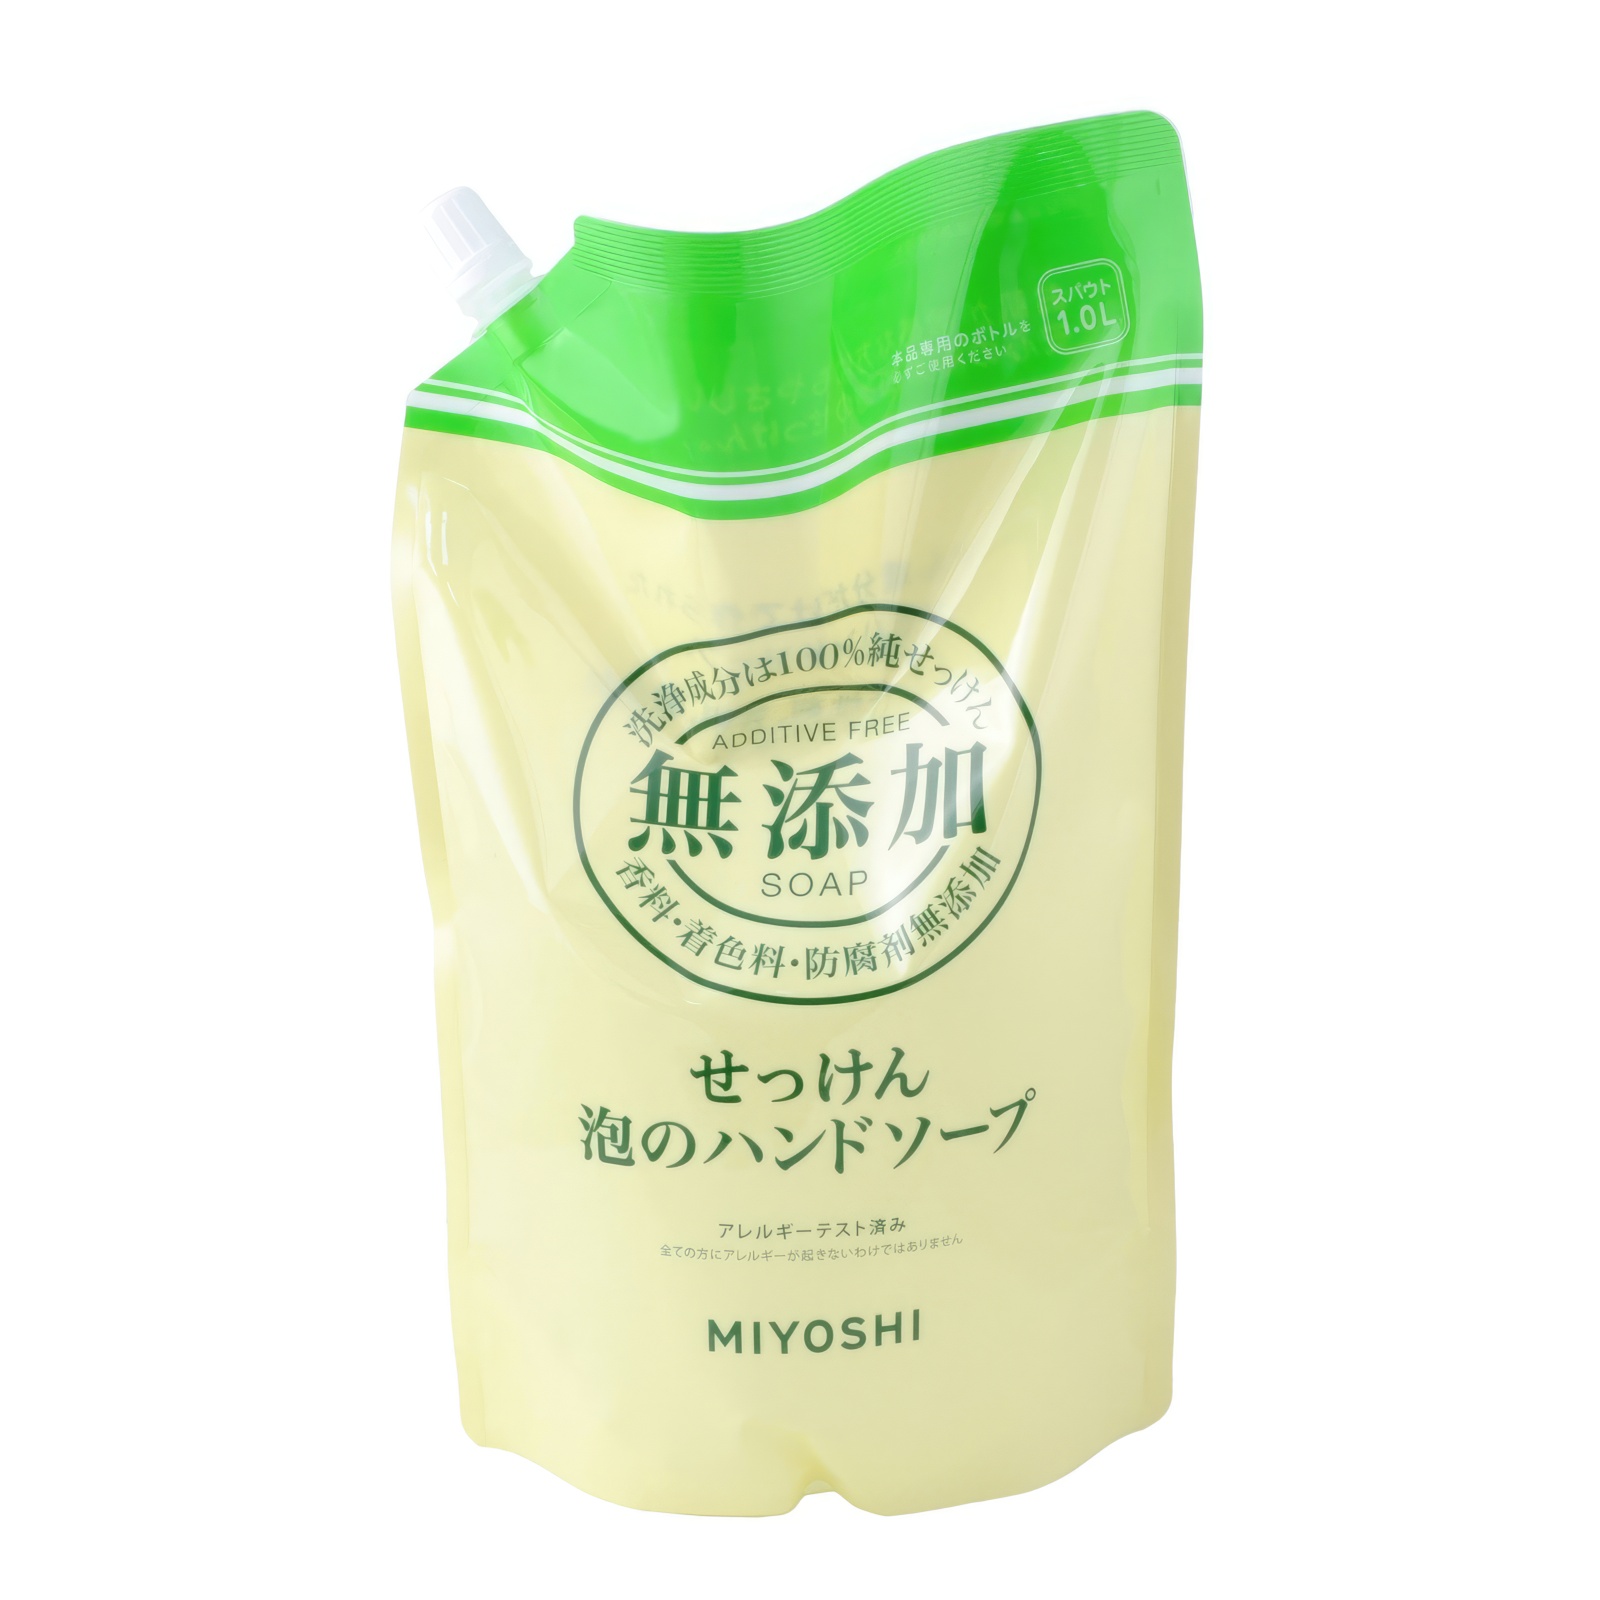 Жидкое мыло MIYOSHI Натуральное пенящееся эко для рук дойпак 1 л солнце и луна eco жидкое мыло для детей 0 2000